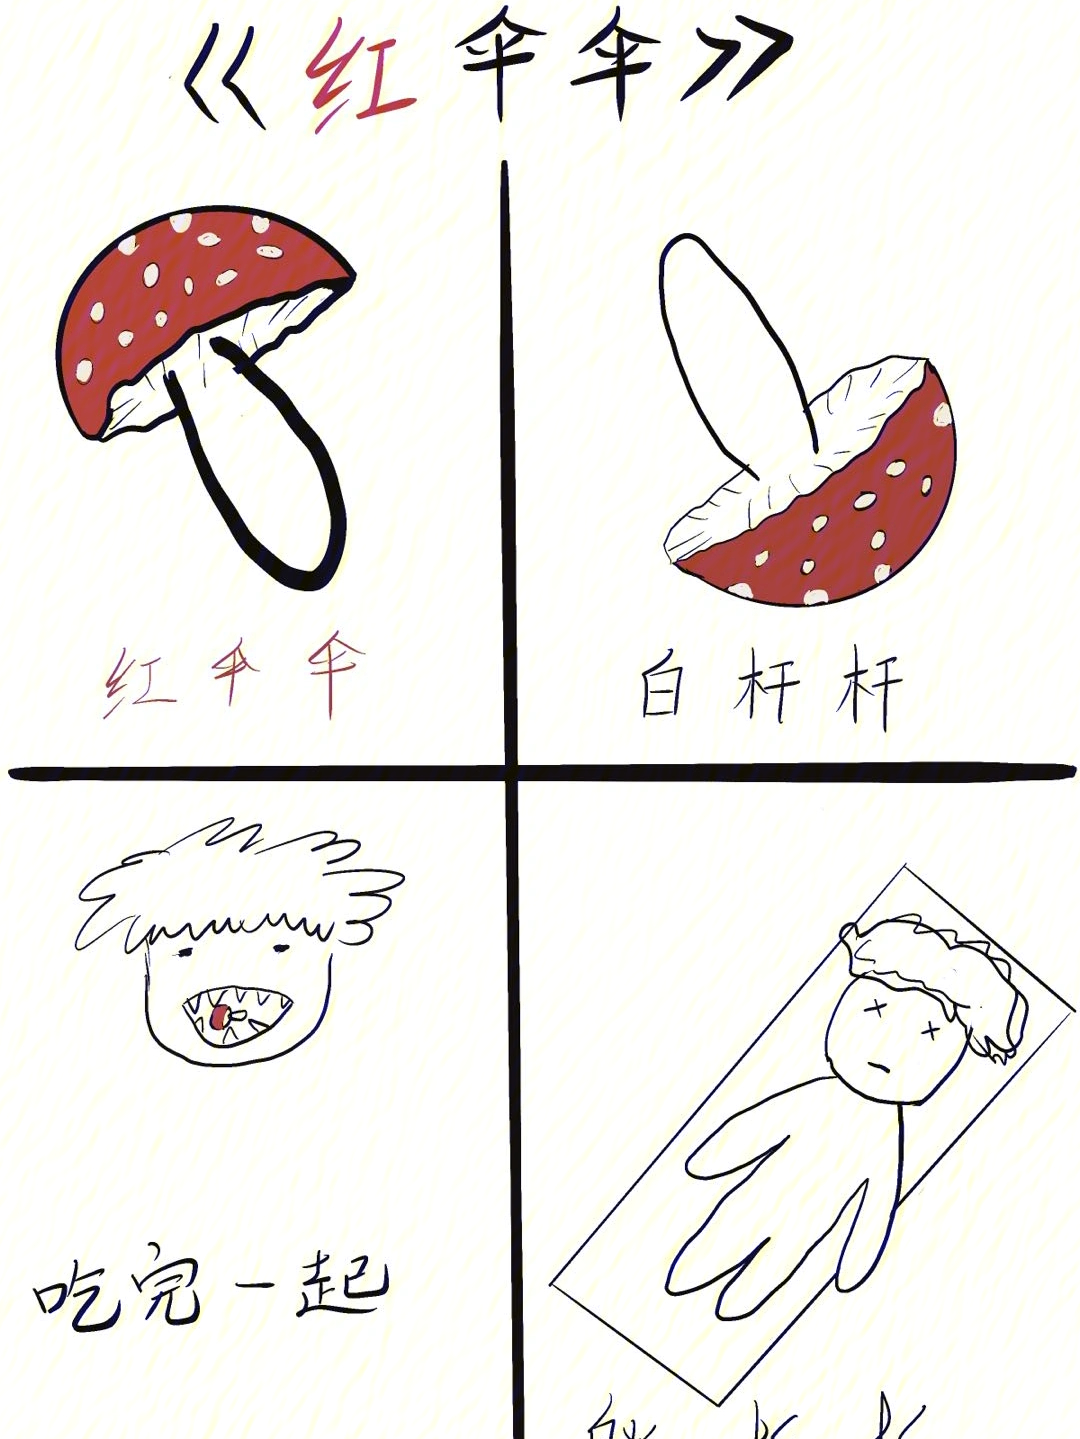 红伞伞白杆杆的简笔画图片